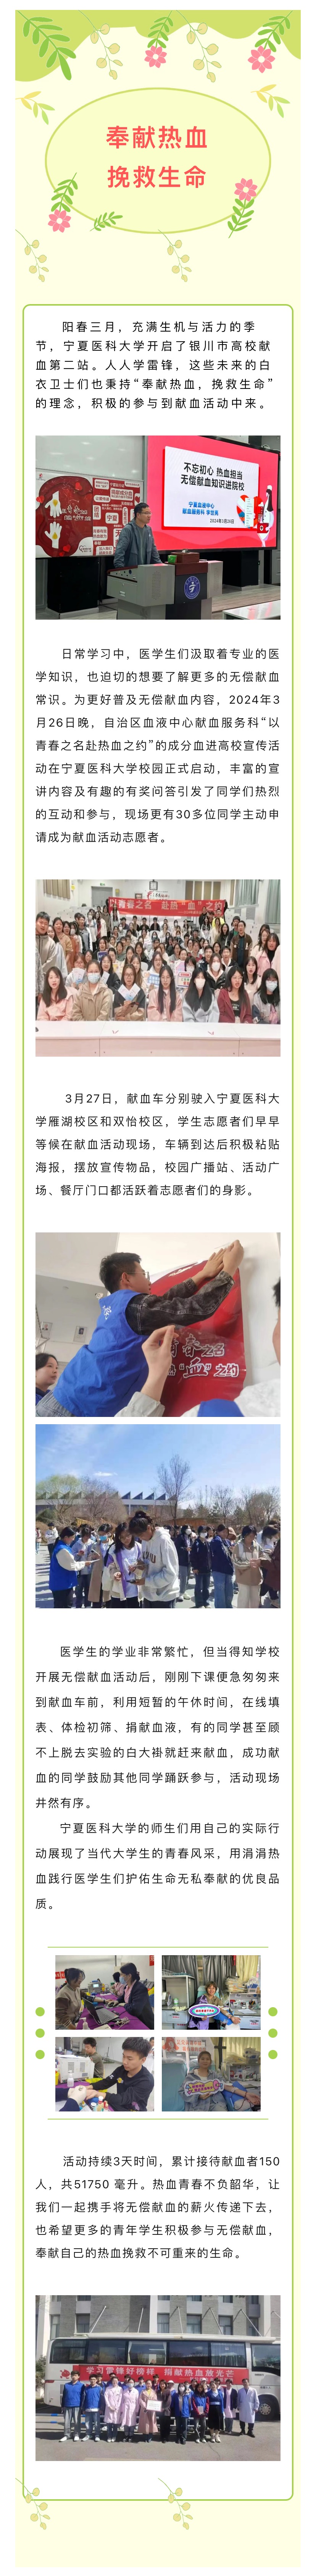 高校献血第二站|宁夏医科大学无偿献血活动